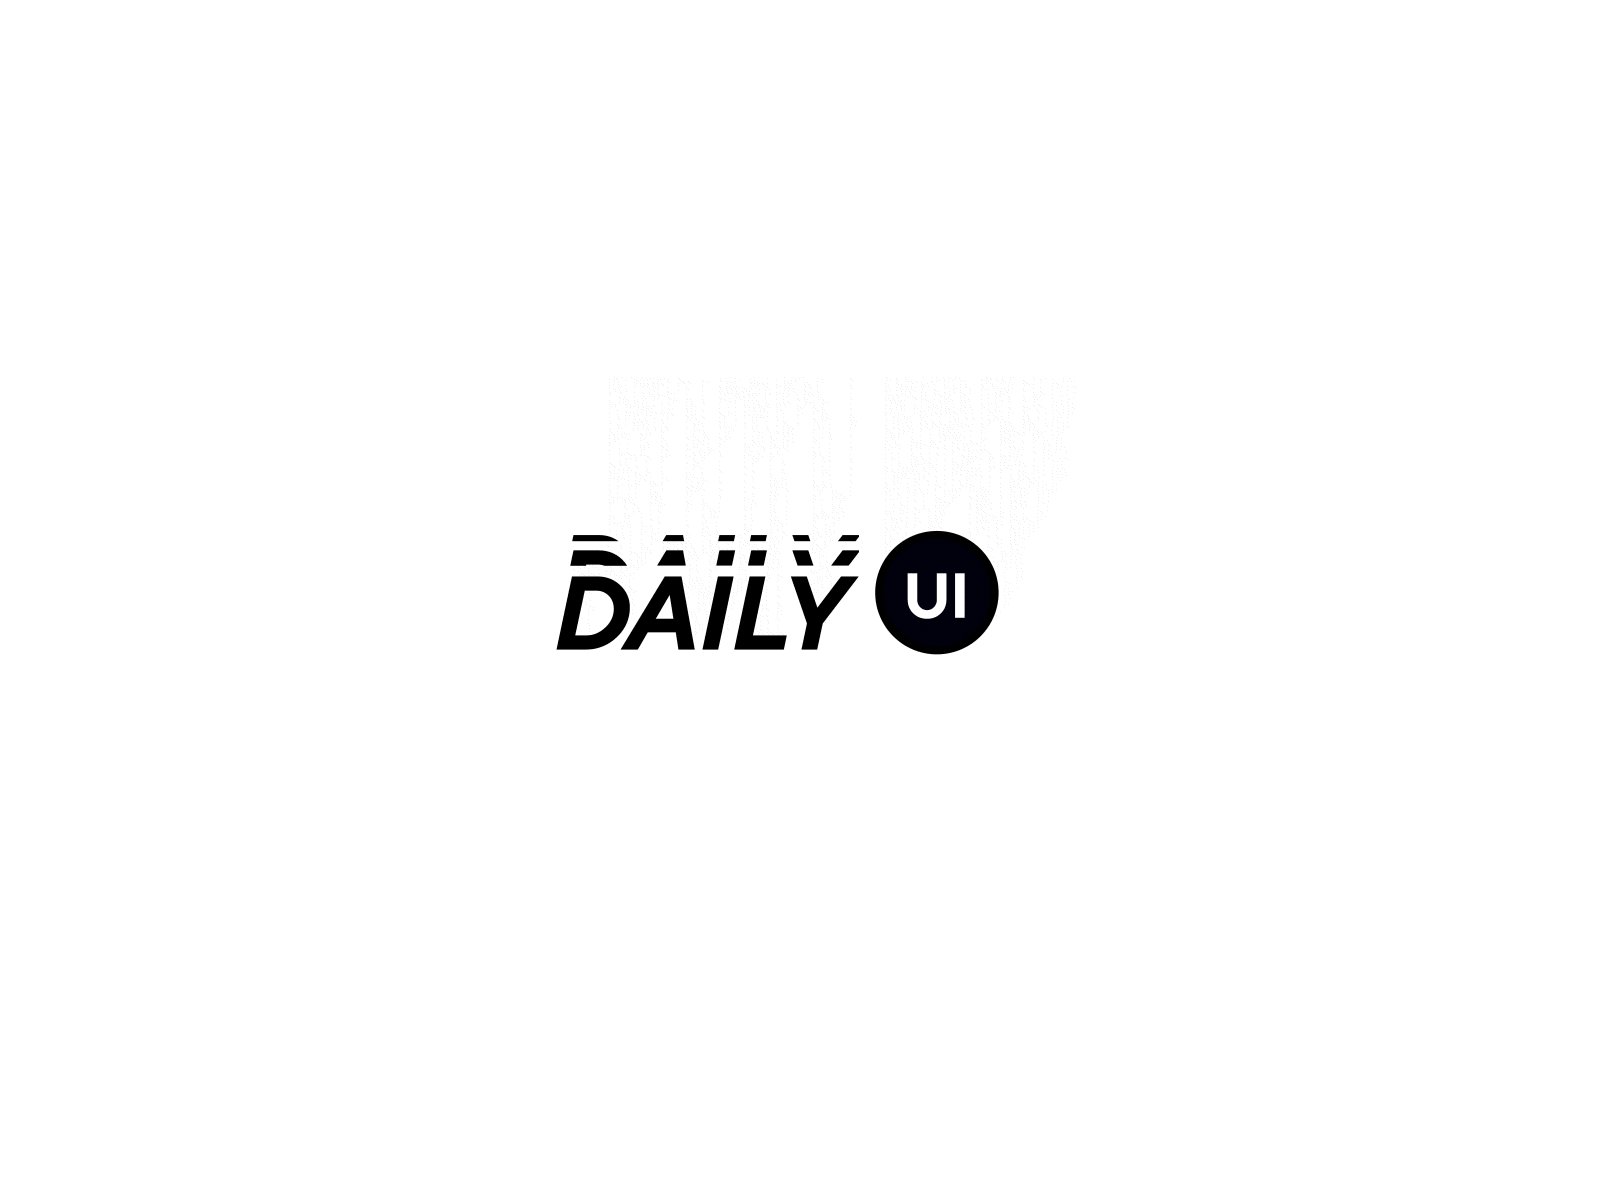 Logo animation animation daily ui logo